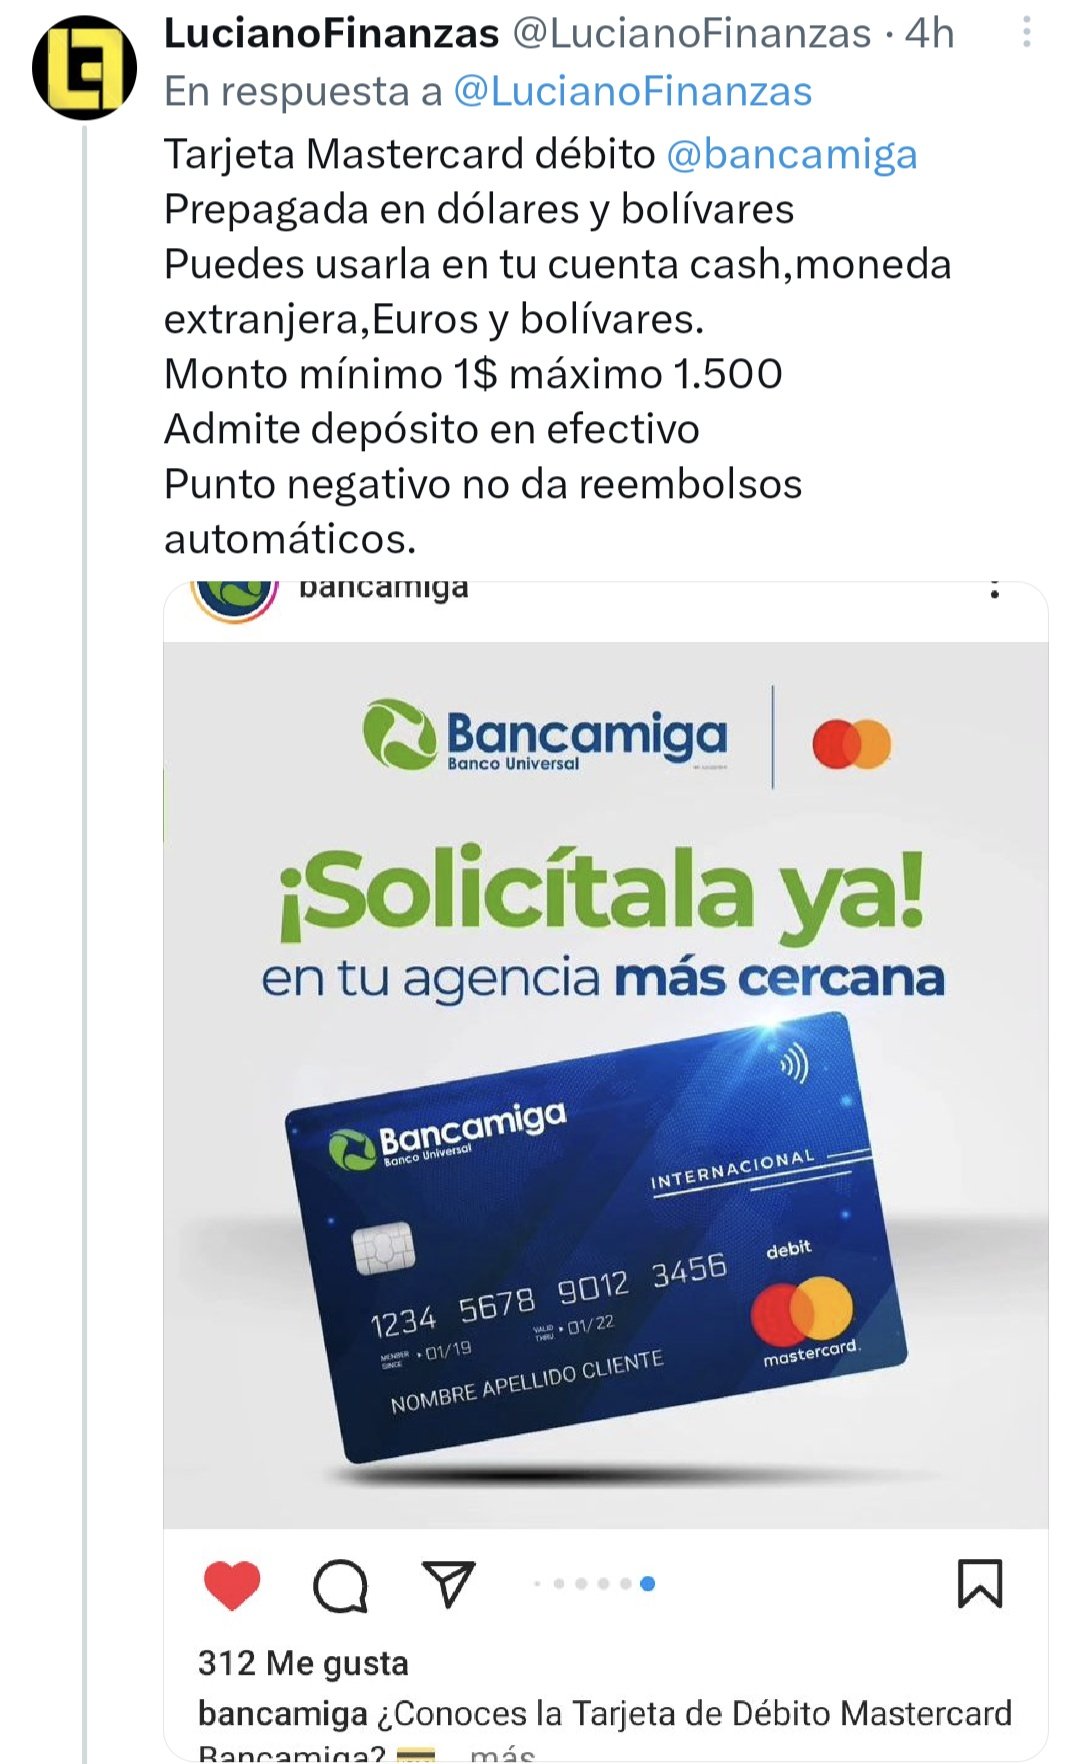 Entretenimiento Sobrio Relacionado Nébula on Twitter: "No, @Lucianofinanzas, la tarjeta de débito #Mastercard  🔴🟡 de #Bancamiga que muestras allí NO es prepagada 💳 (No es recargable)  por lo que NO hay montos mínimos ❌ sino